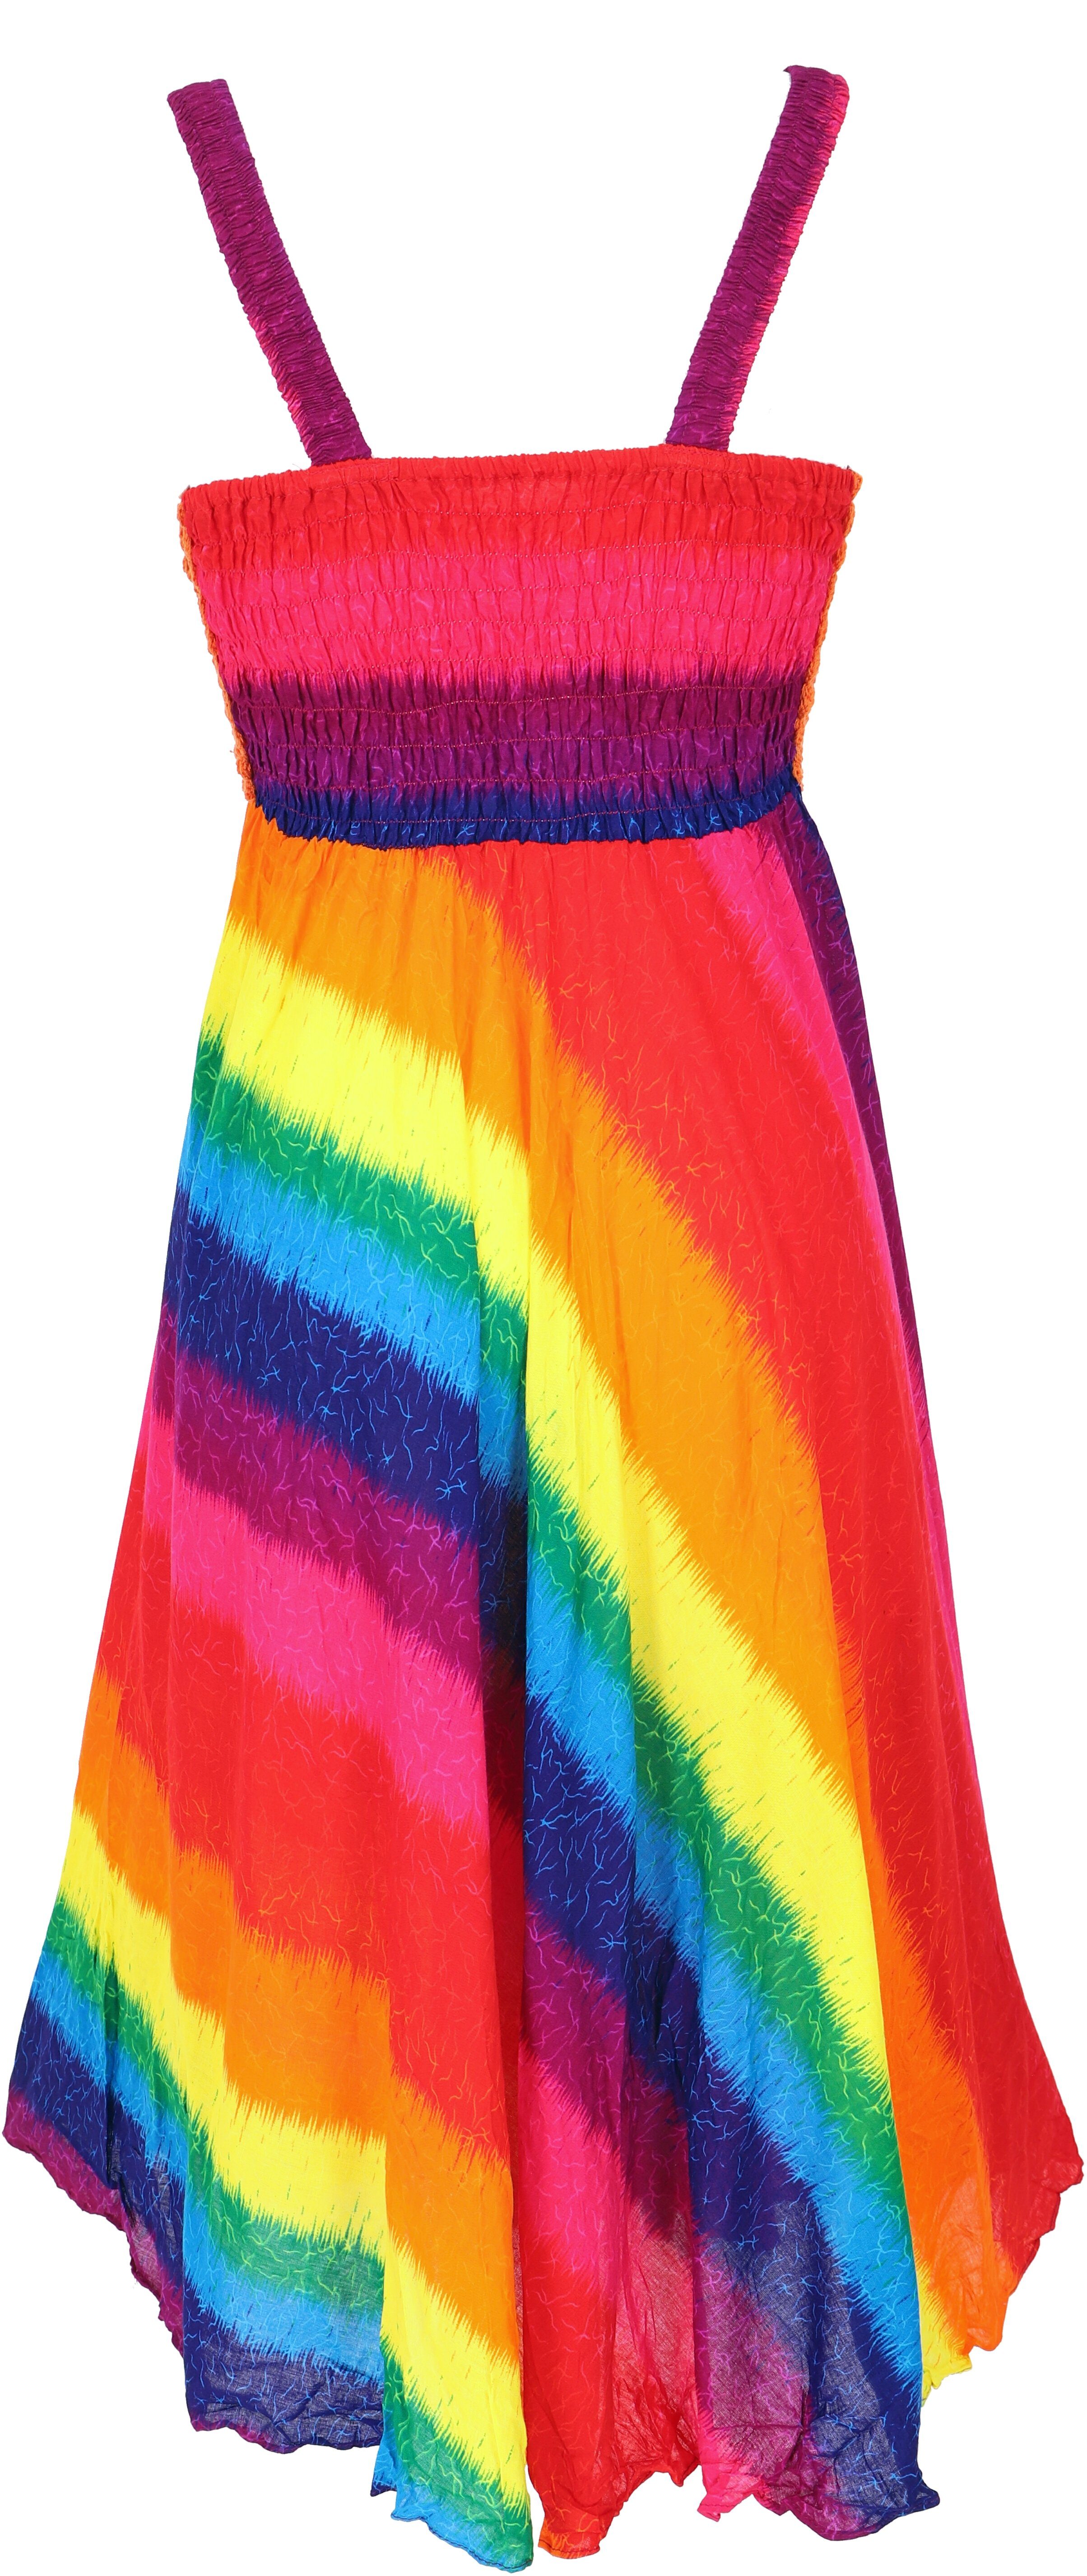 Guru-Shop Midikleid Boho Minikleid, Sommerkleid, alternative Krinkelkleid regenbogen/orange -.. Bekleidung